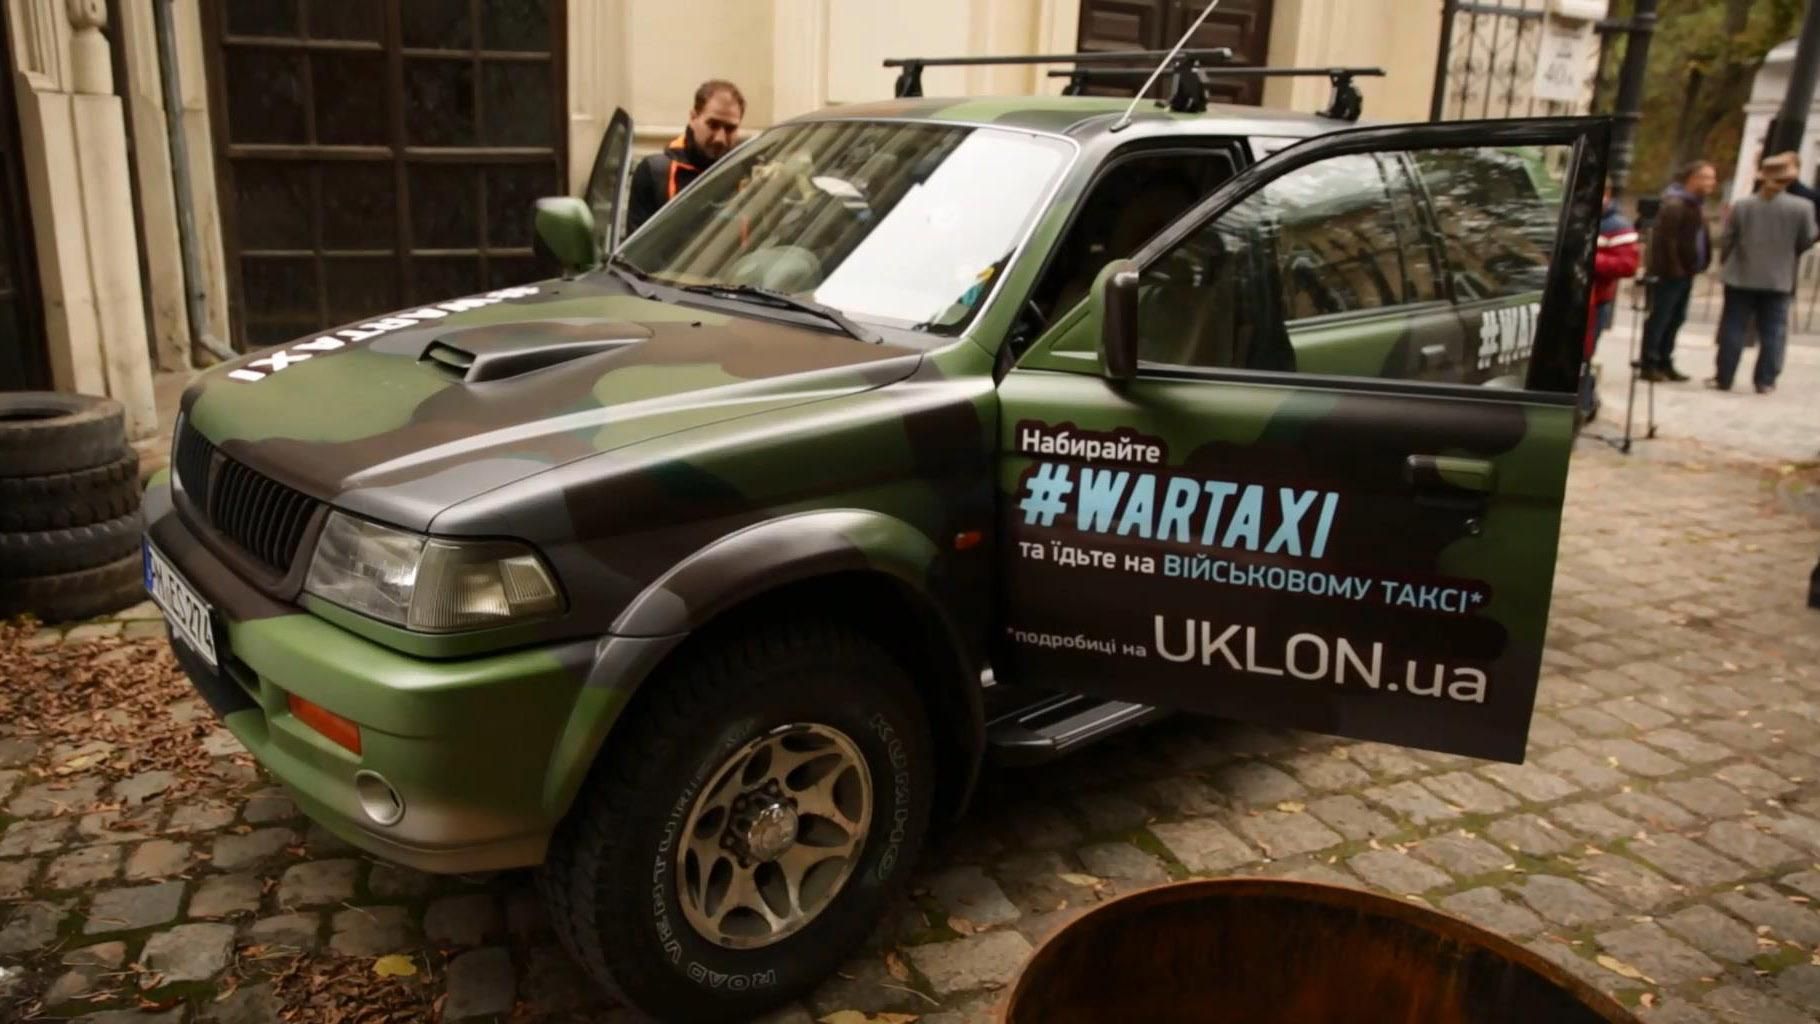 И такси вызвал, и армии помог: во Львове появилось "военное такси"